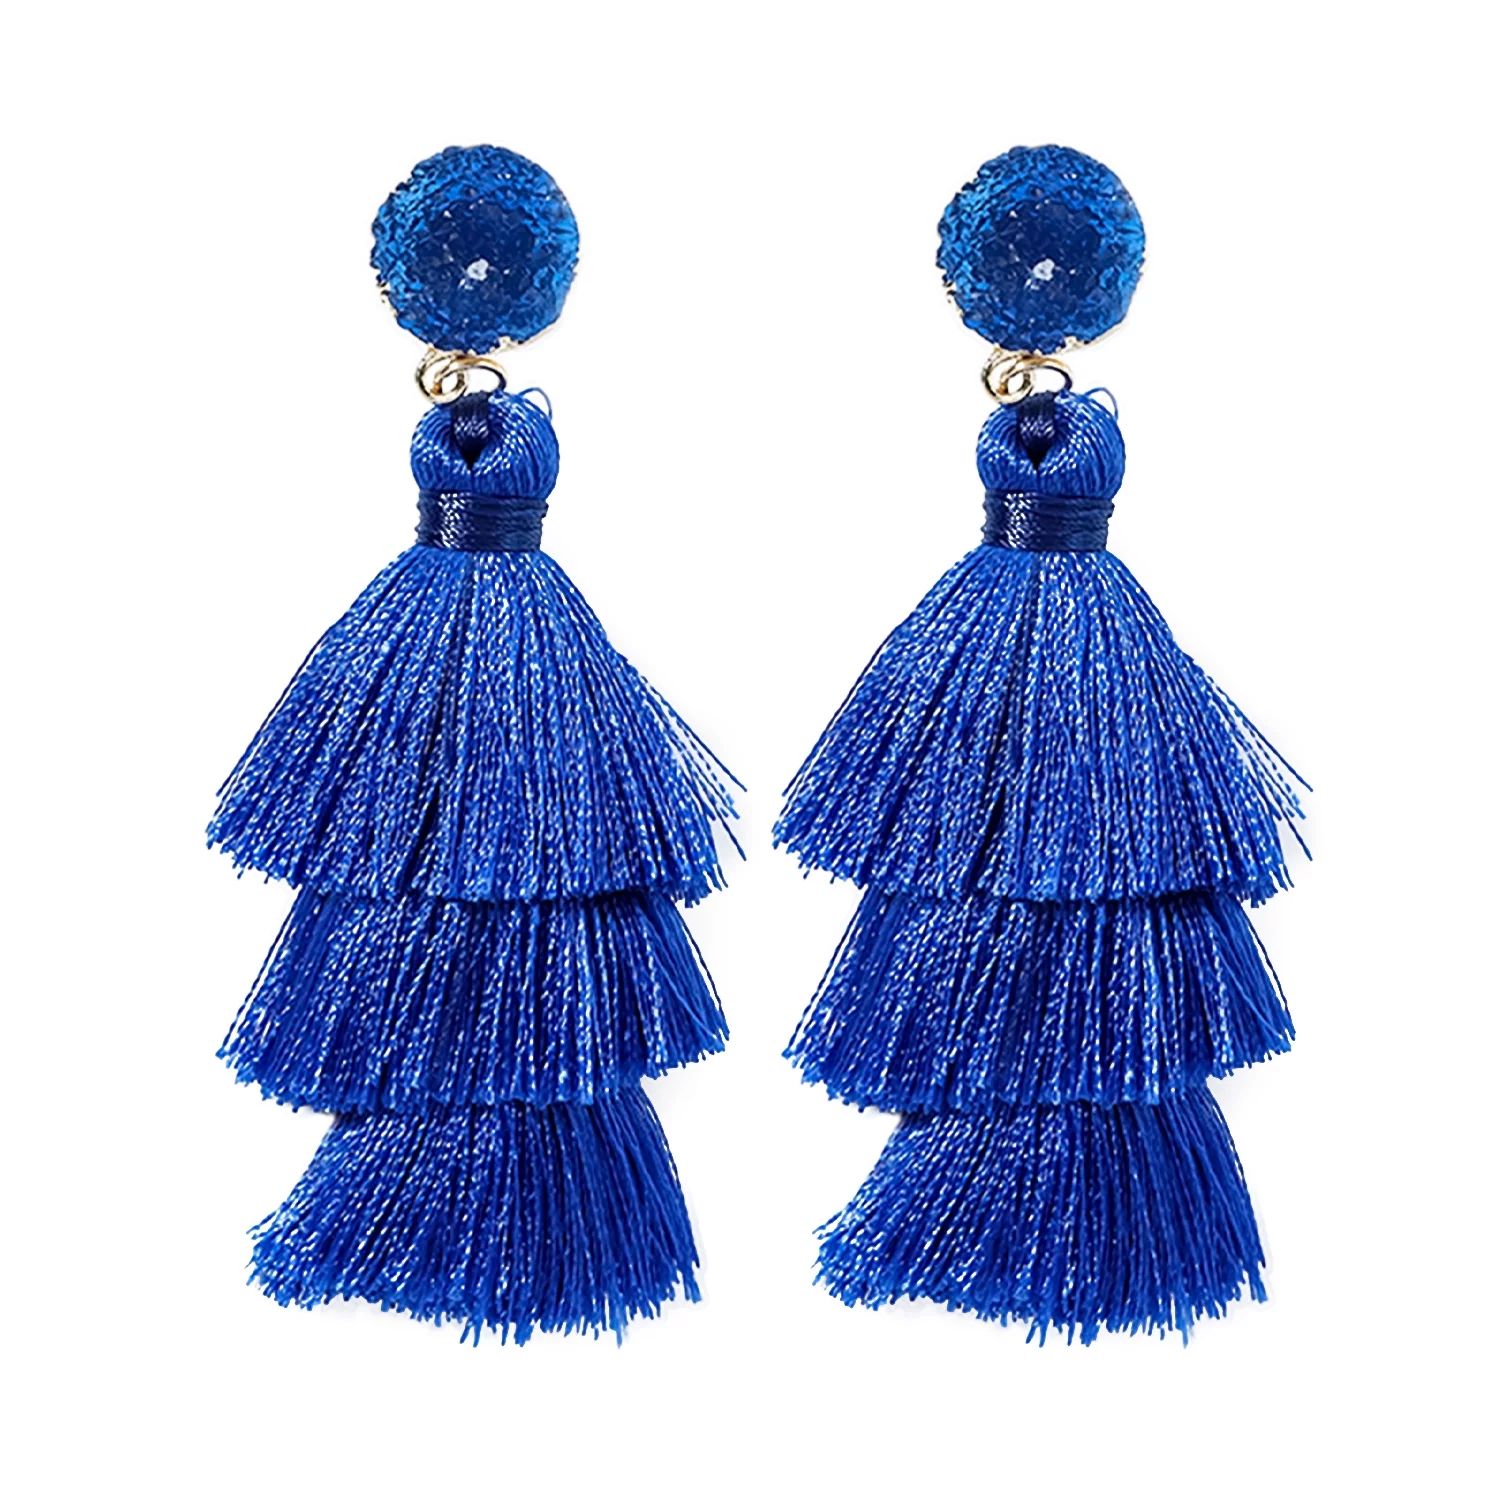 Blue Tassel Earrings for Women | Colorful Layered Tassle 3 Tier Bohemian Earrings | Dangle Drop E... | Walmart (US)